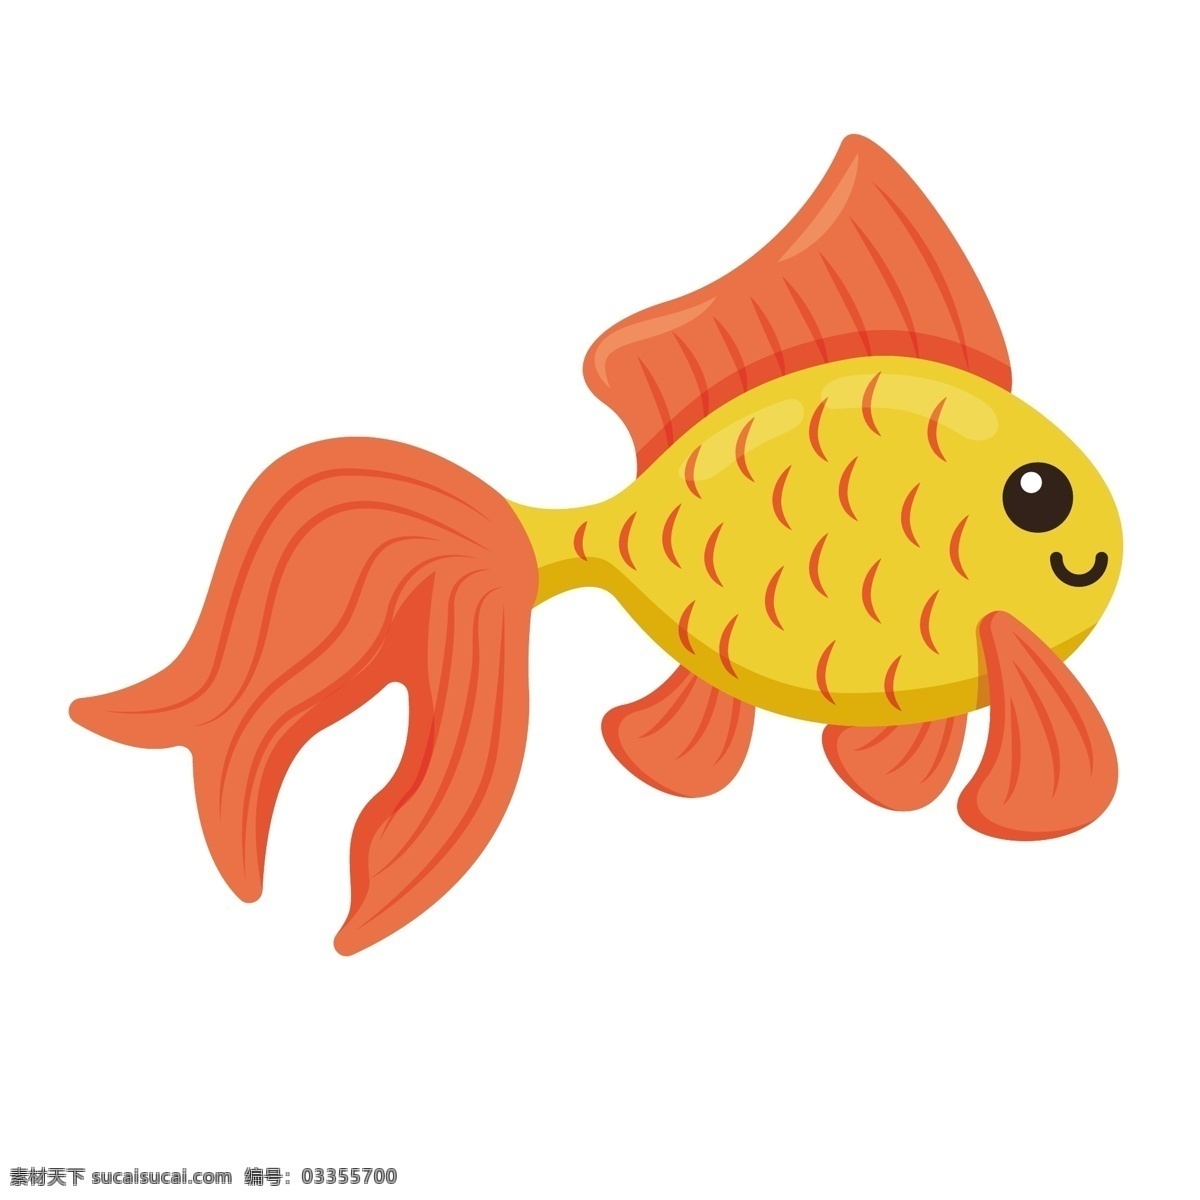 漂亮 金鱼 矢量 观赏鱼 通 卡通的鱼 可爱 可爱的鱼 卡通 卡通金鱼 海洋生物 海洋的鱼